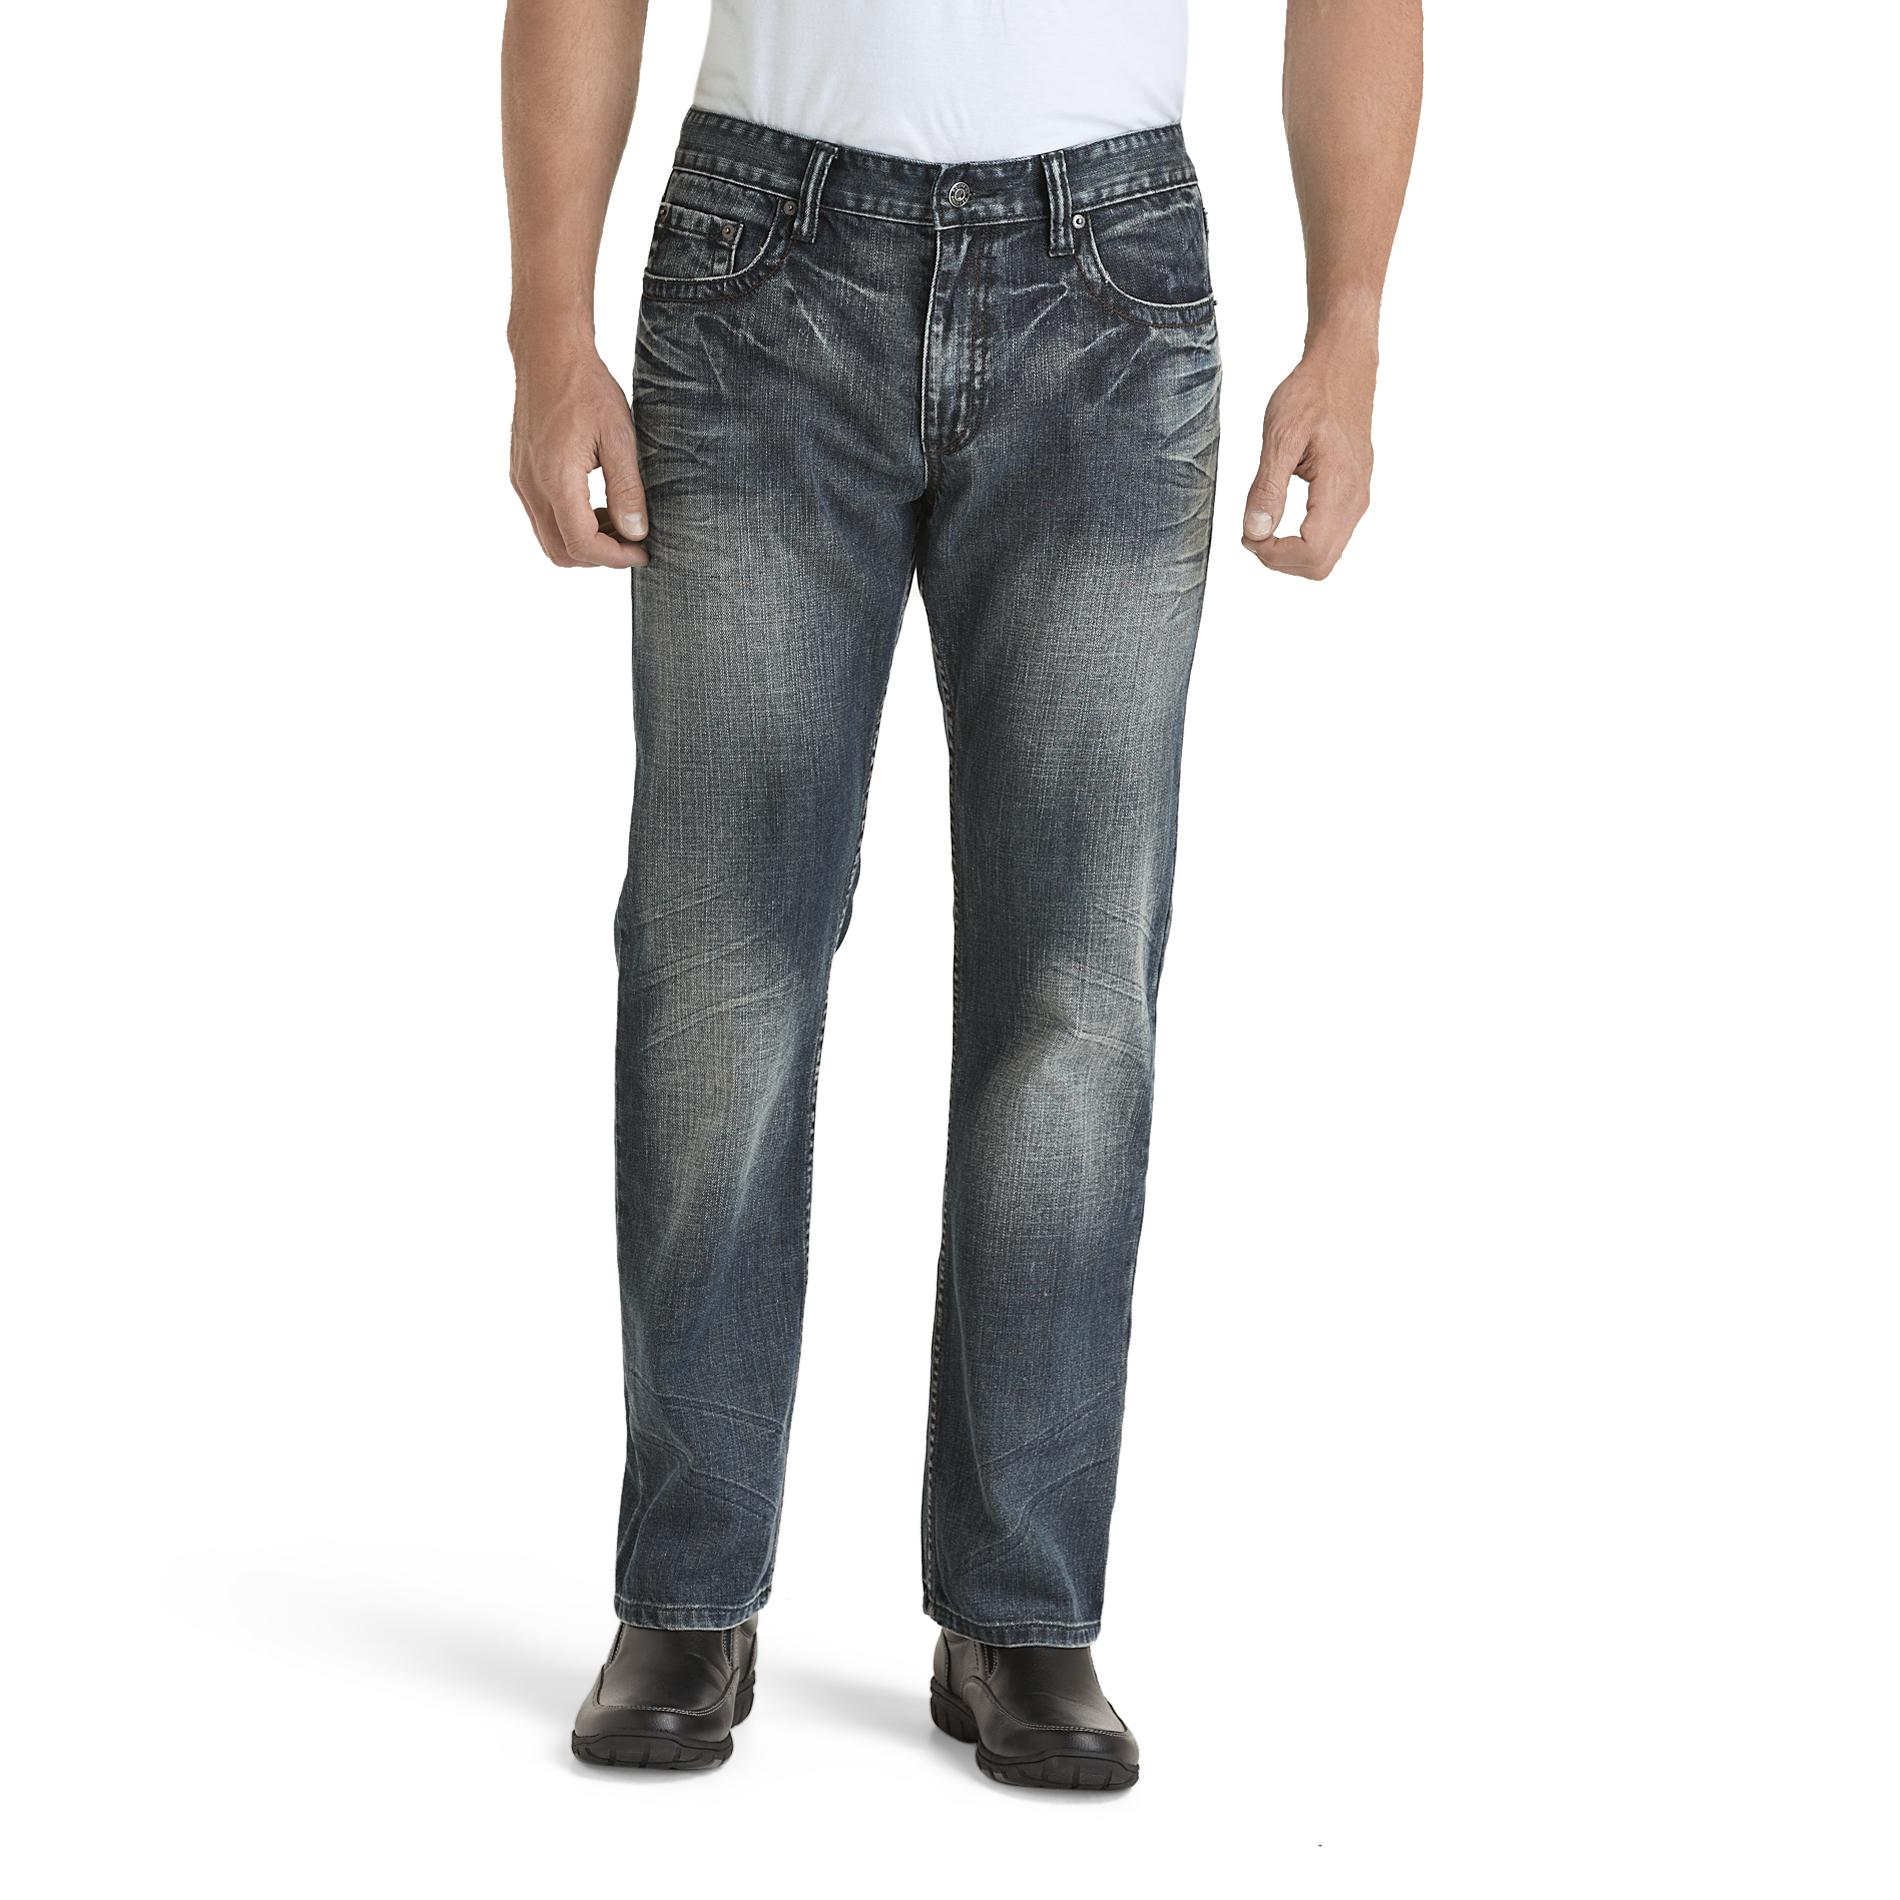 Route 66 Men's Premium Slim Straight Jeans